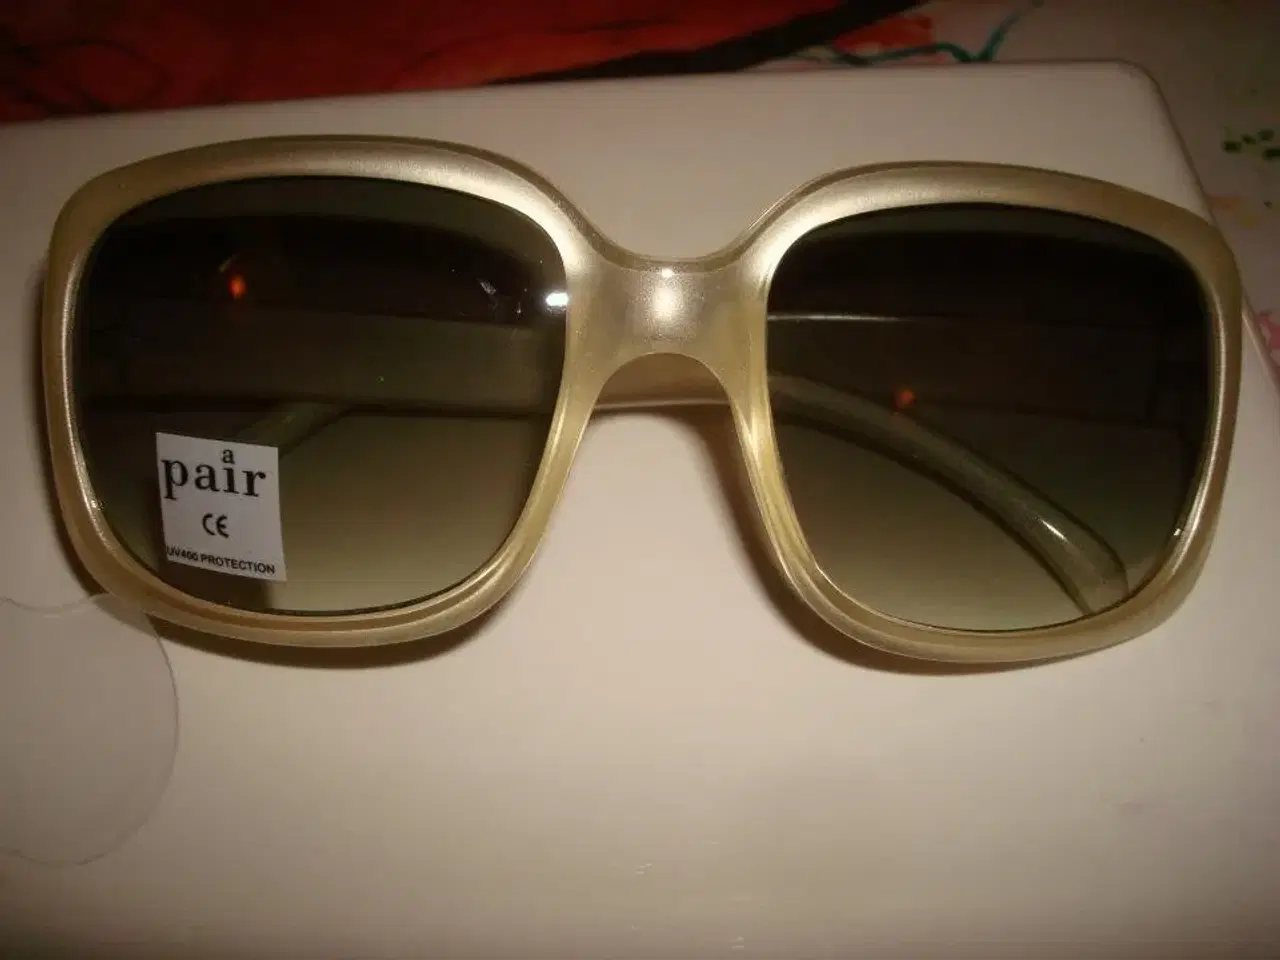 Billede 2 - nye a pair solbriller